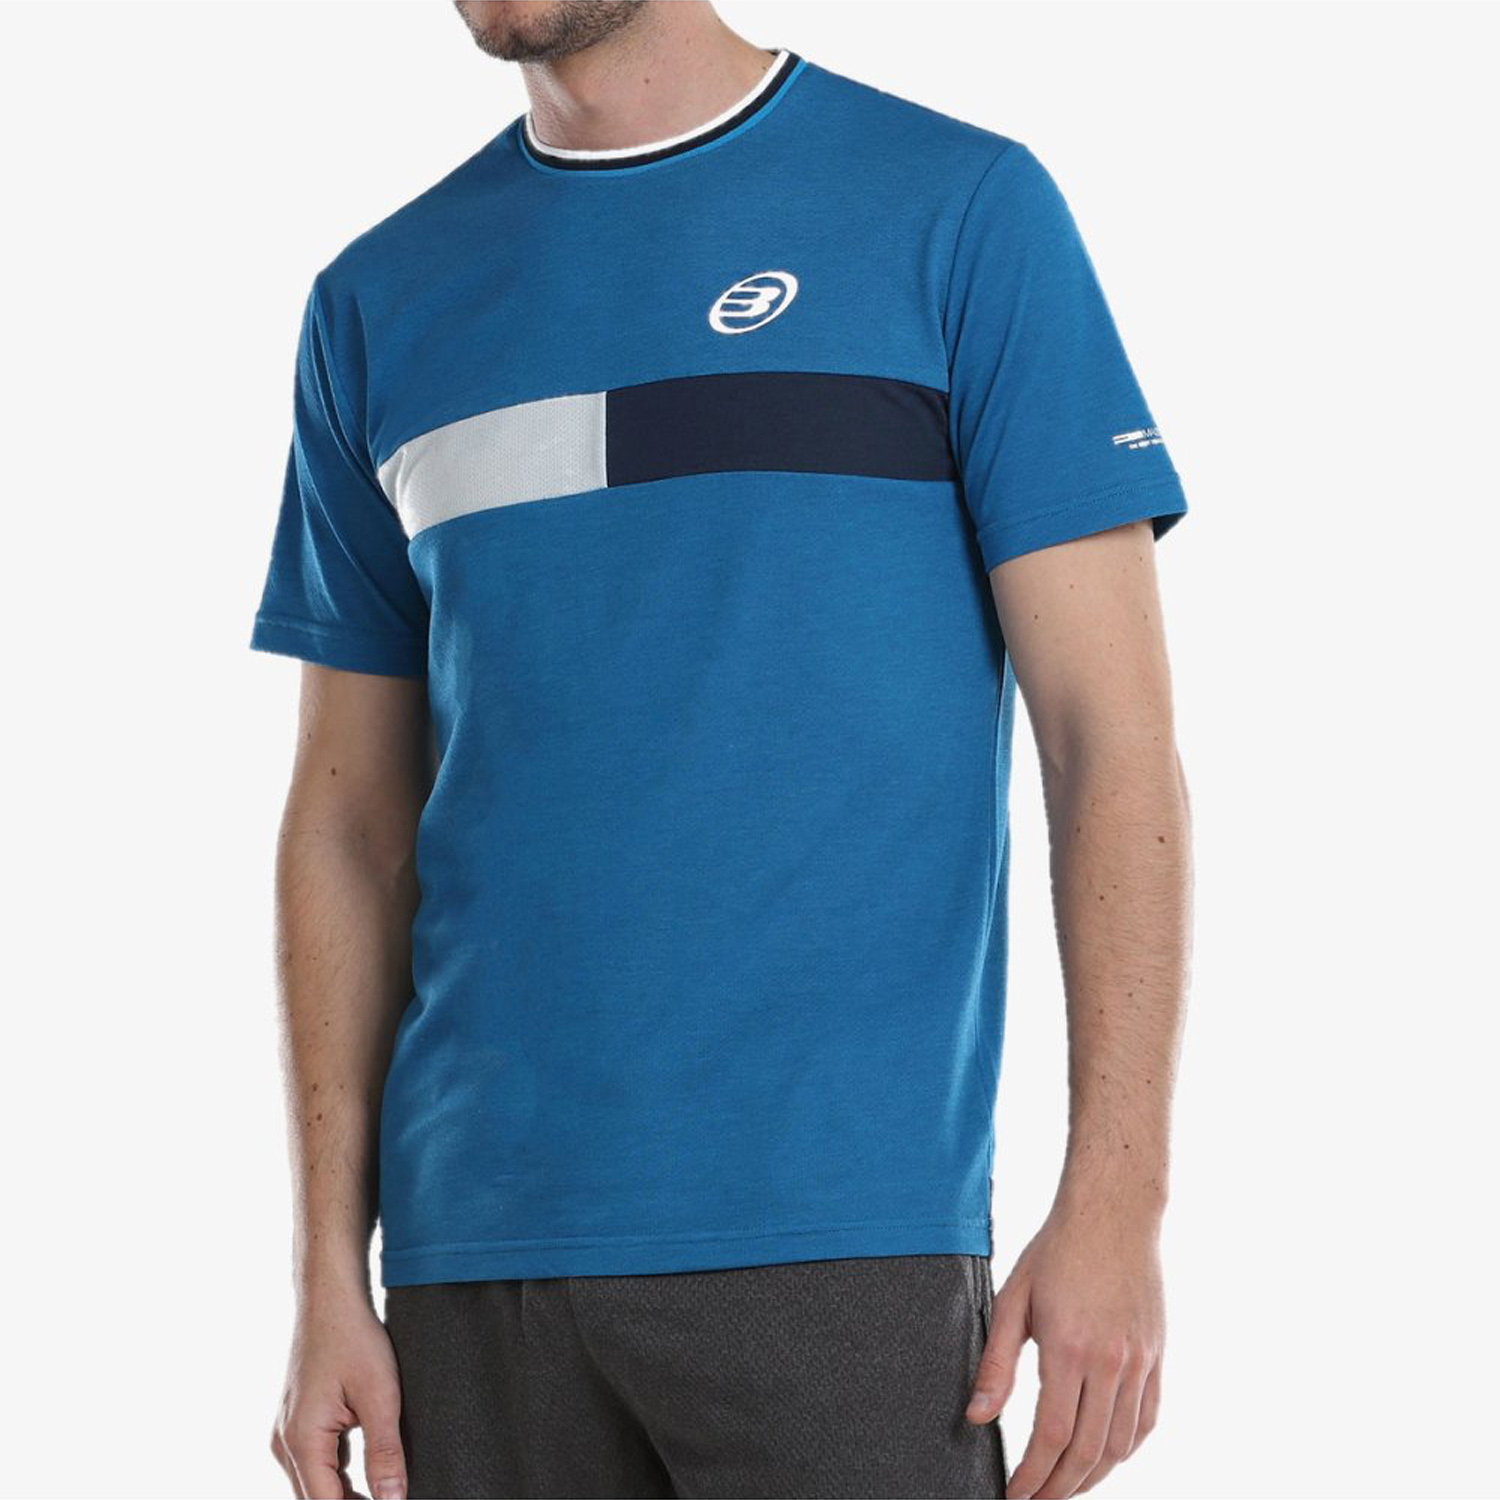 Bullpadel Notro T-Shirt - Azul Bel Air Vigore